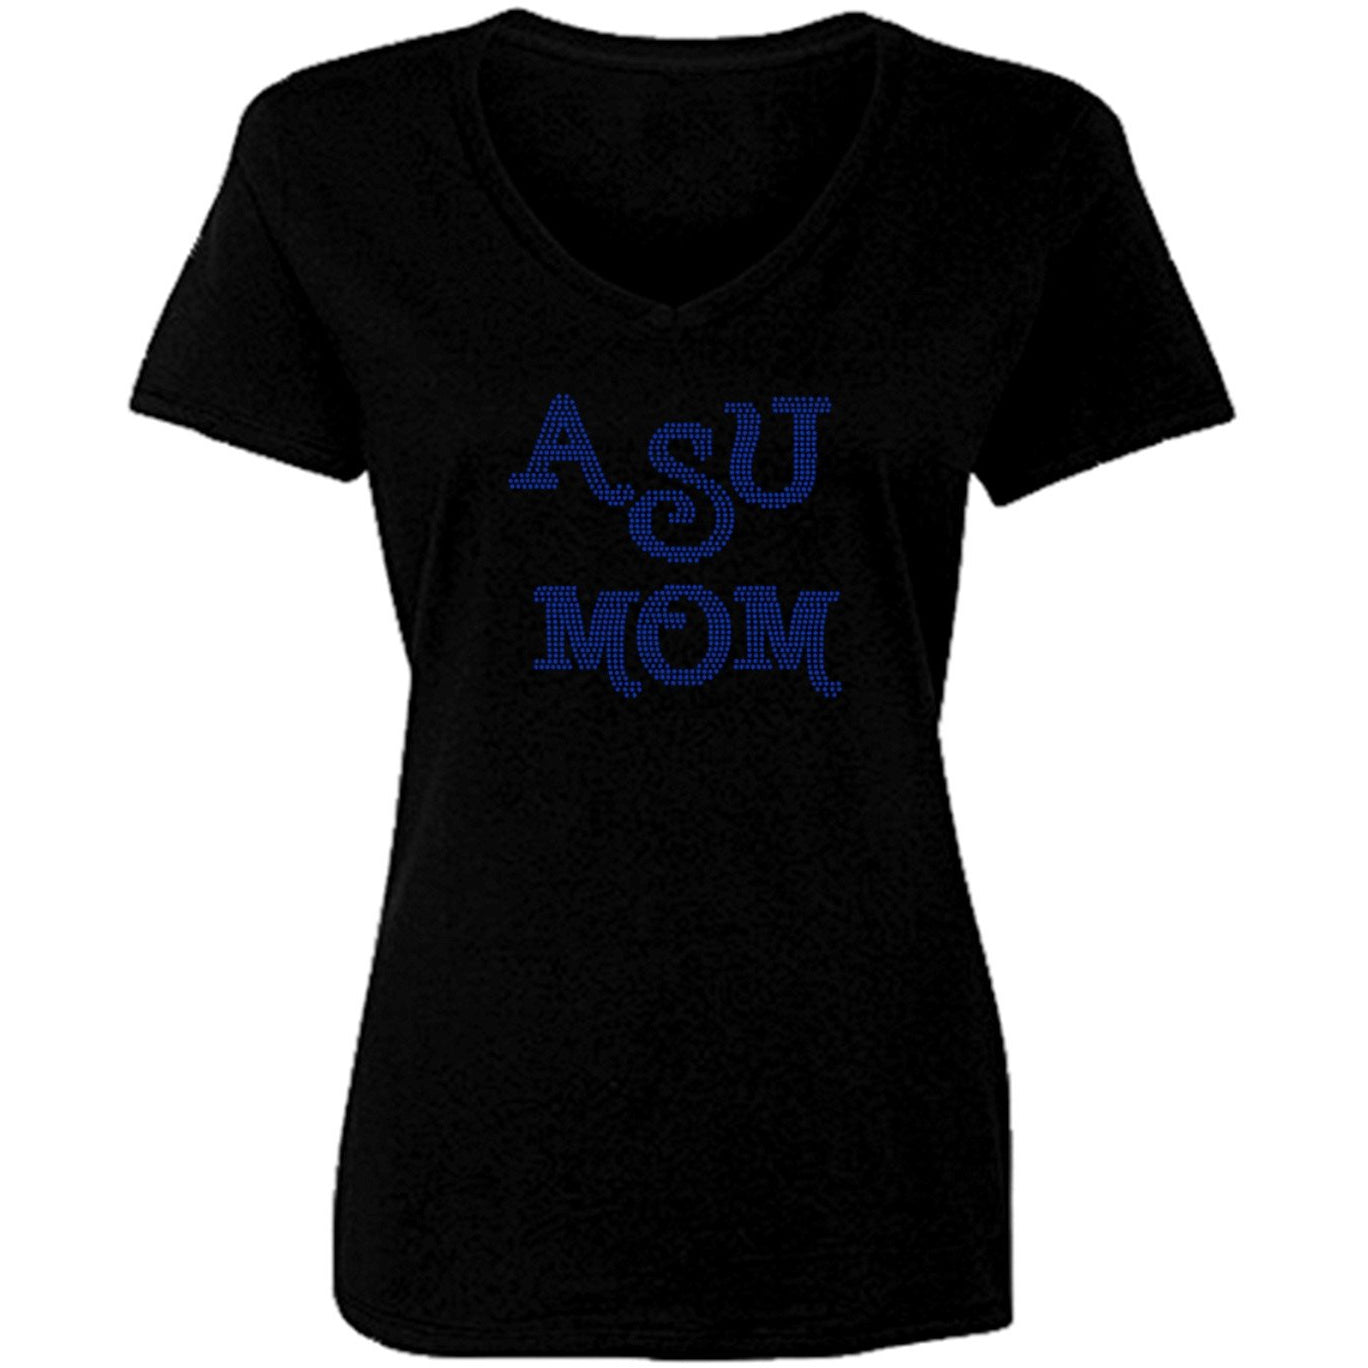 ASU Mom Rhinestone T Shirt